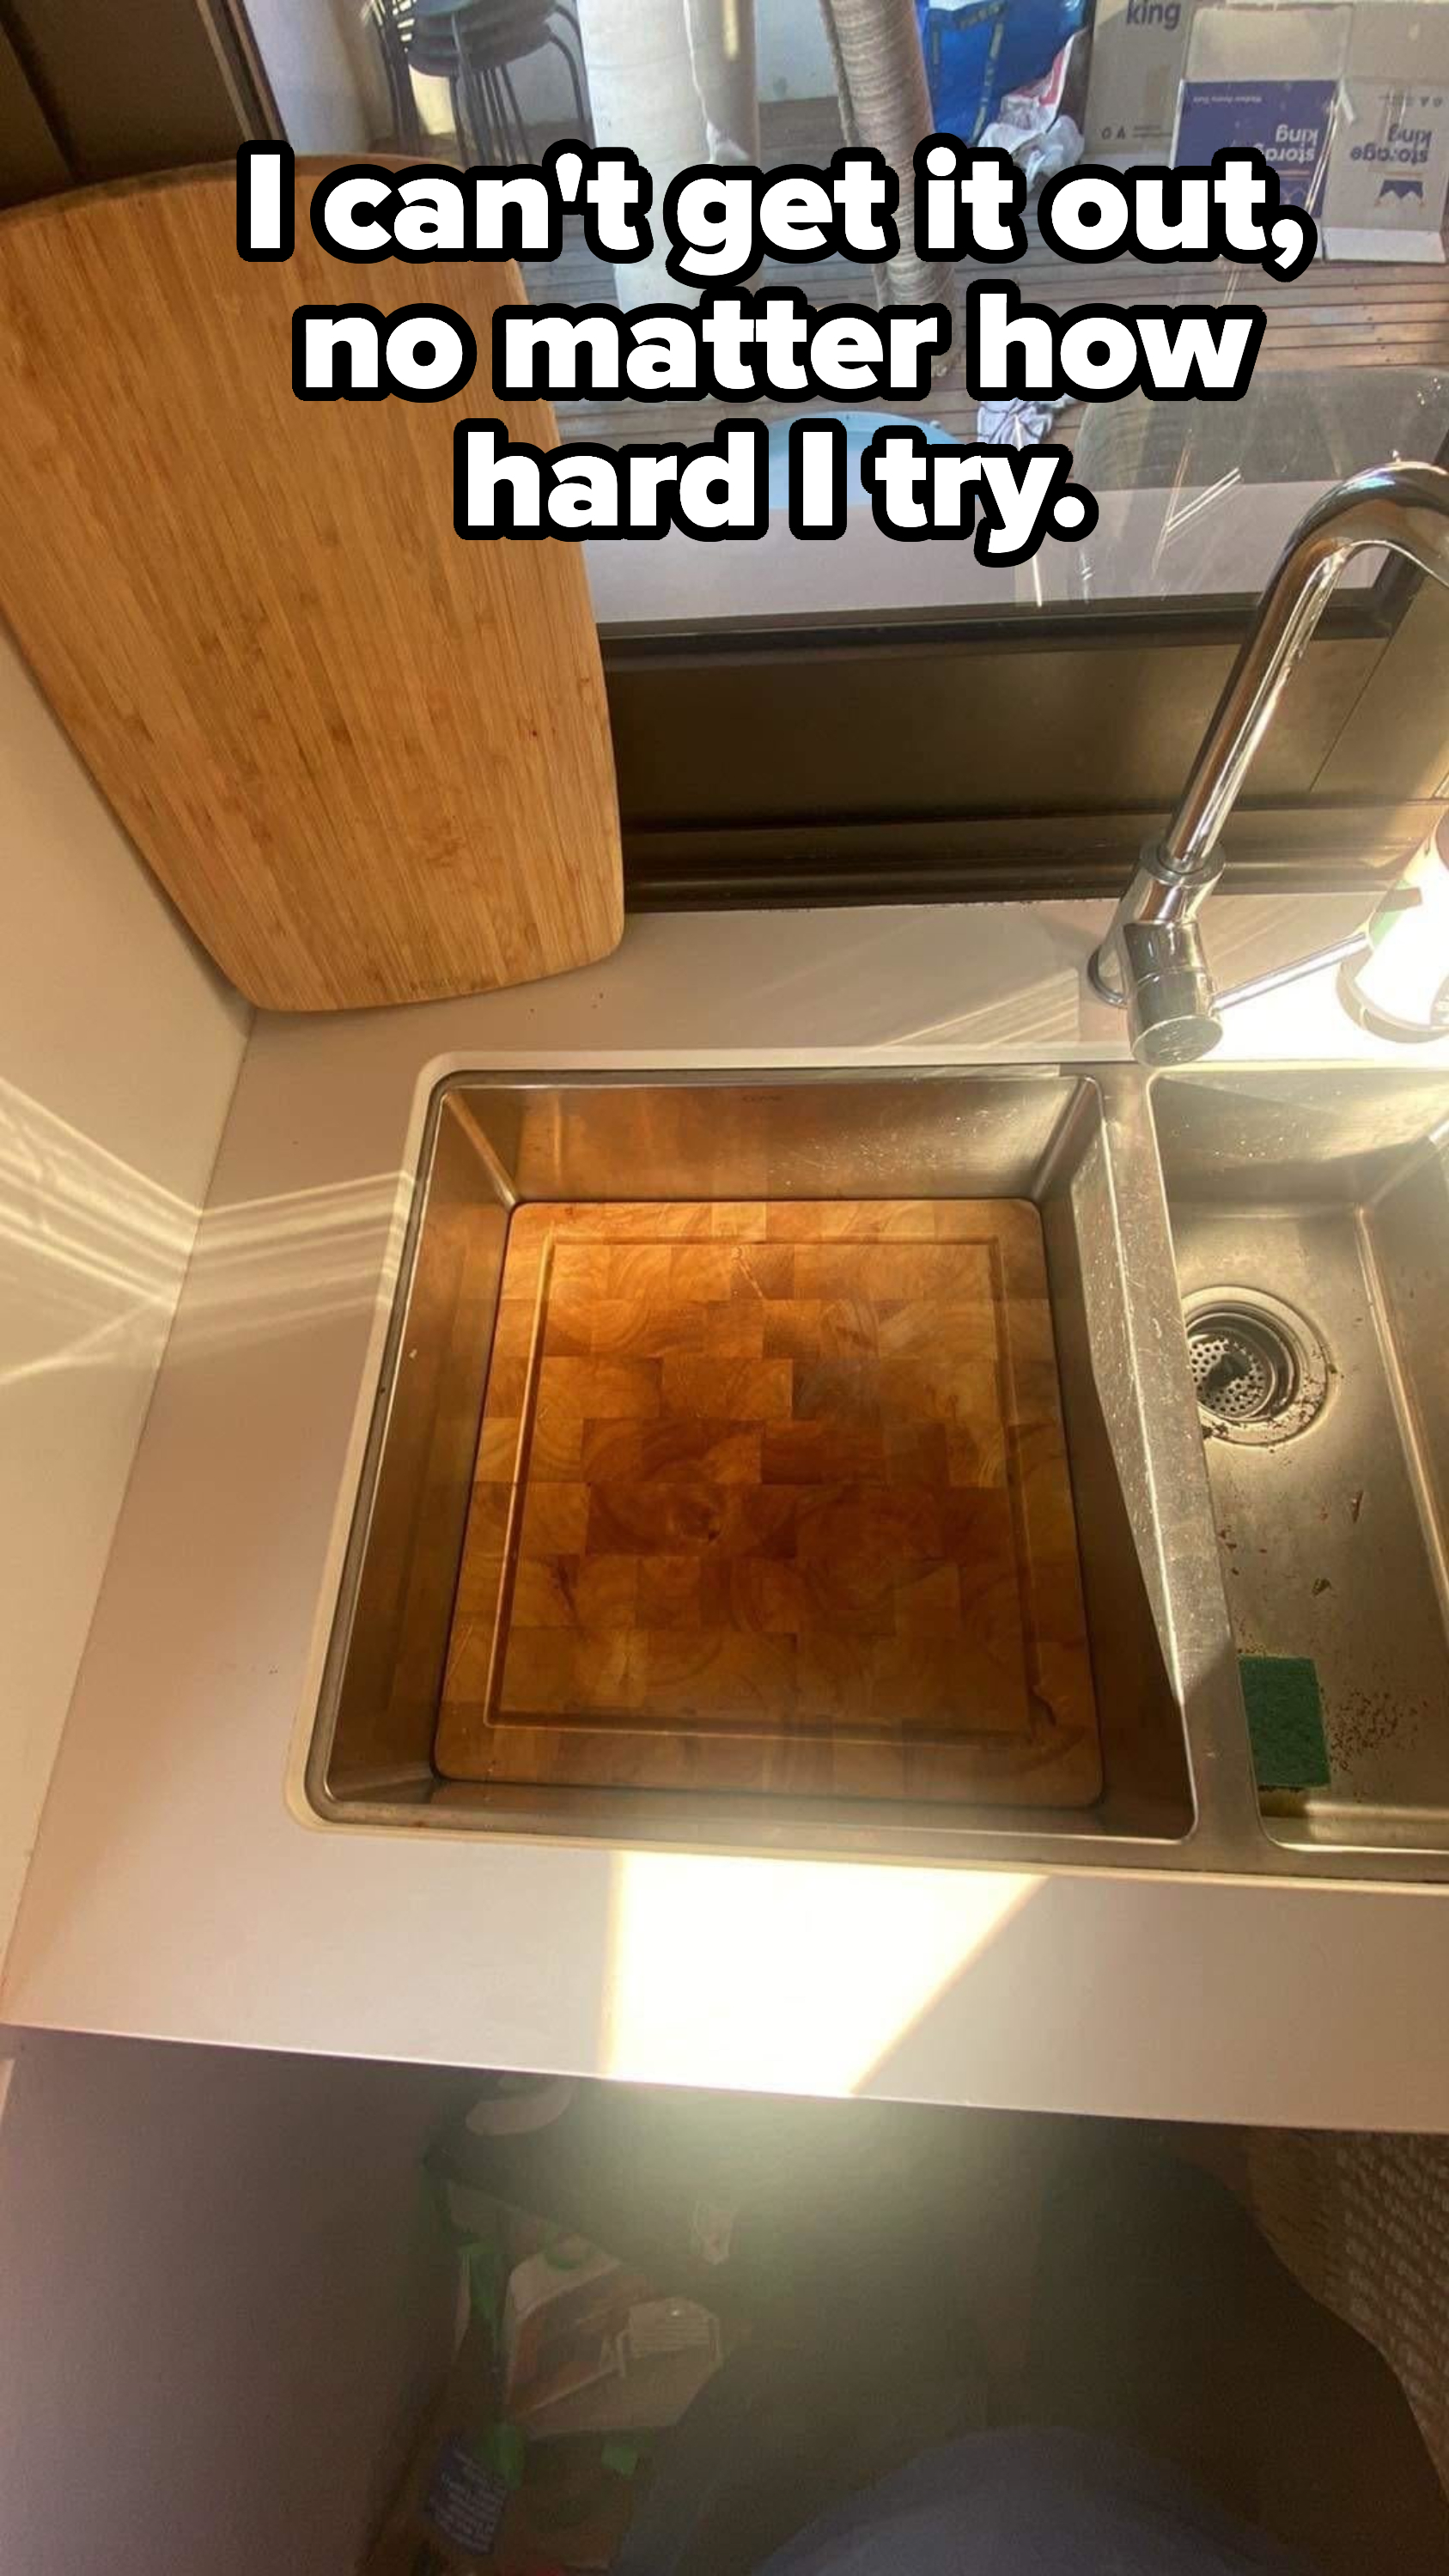 A cutting board stuck in a sink